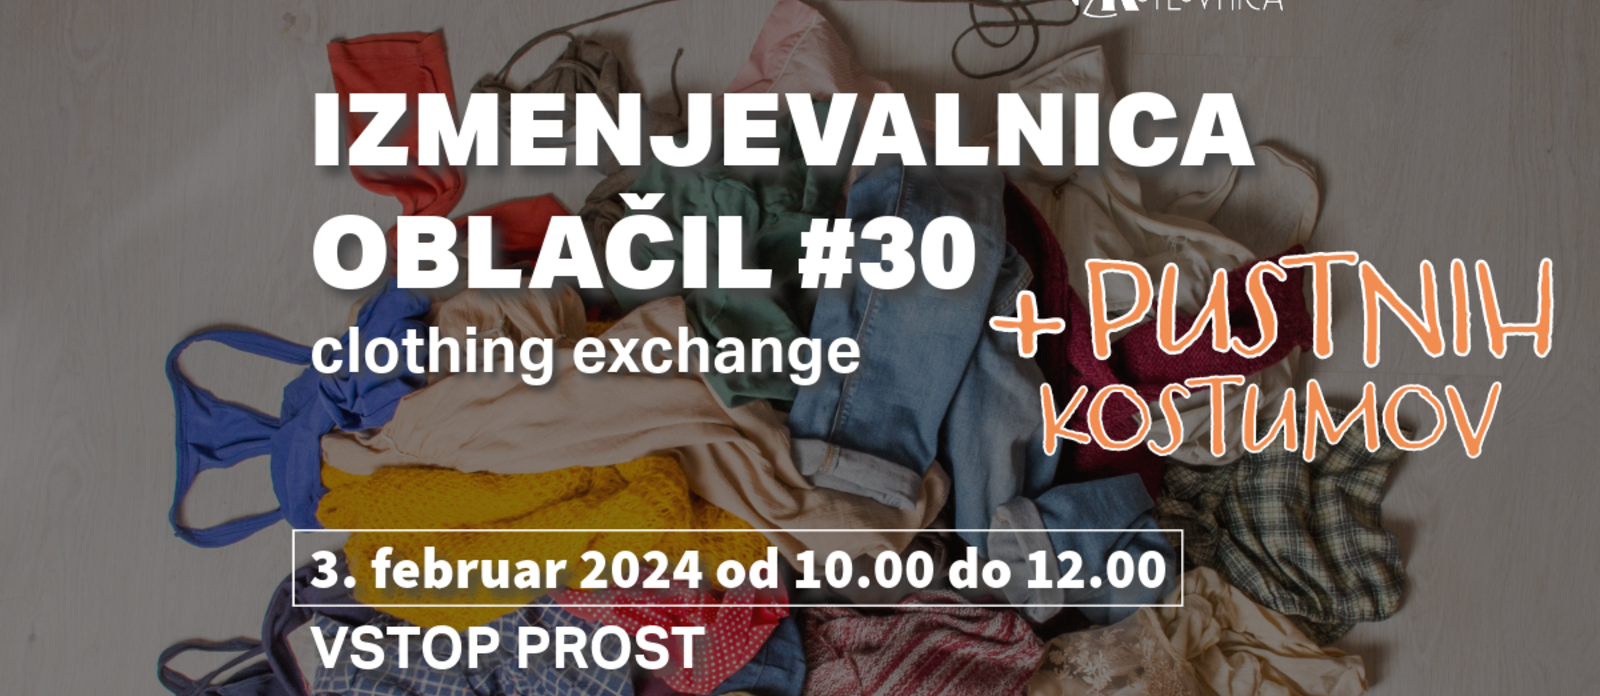 Izmenjevalnica oblačil #30 | clothing exchange